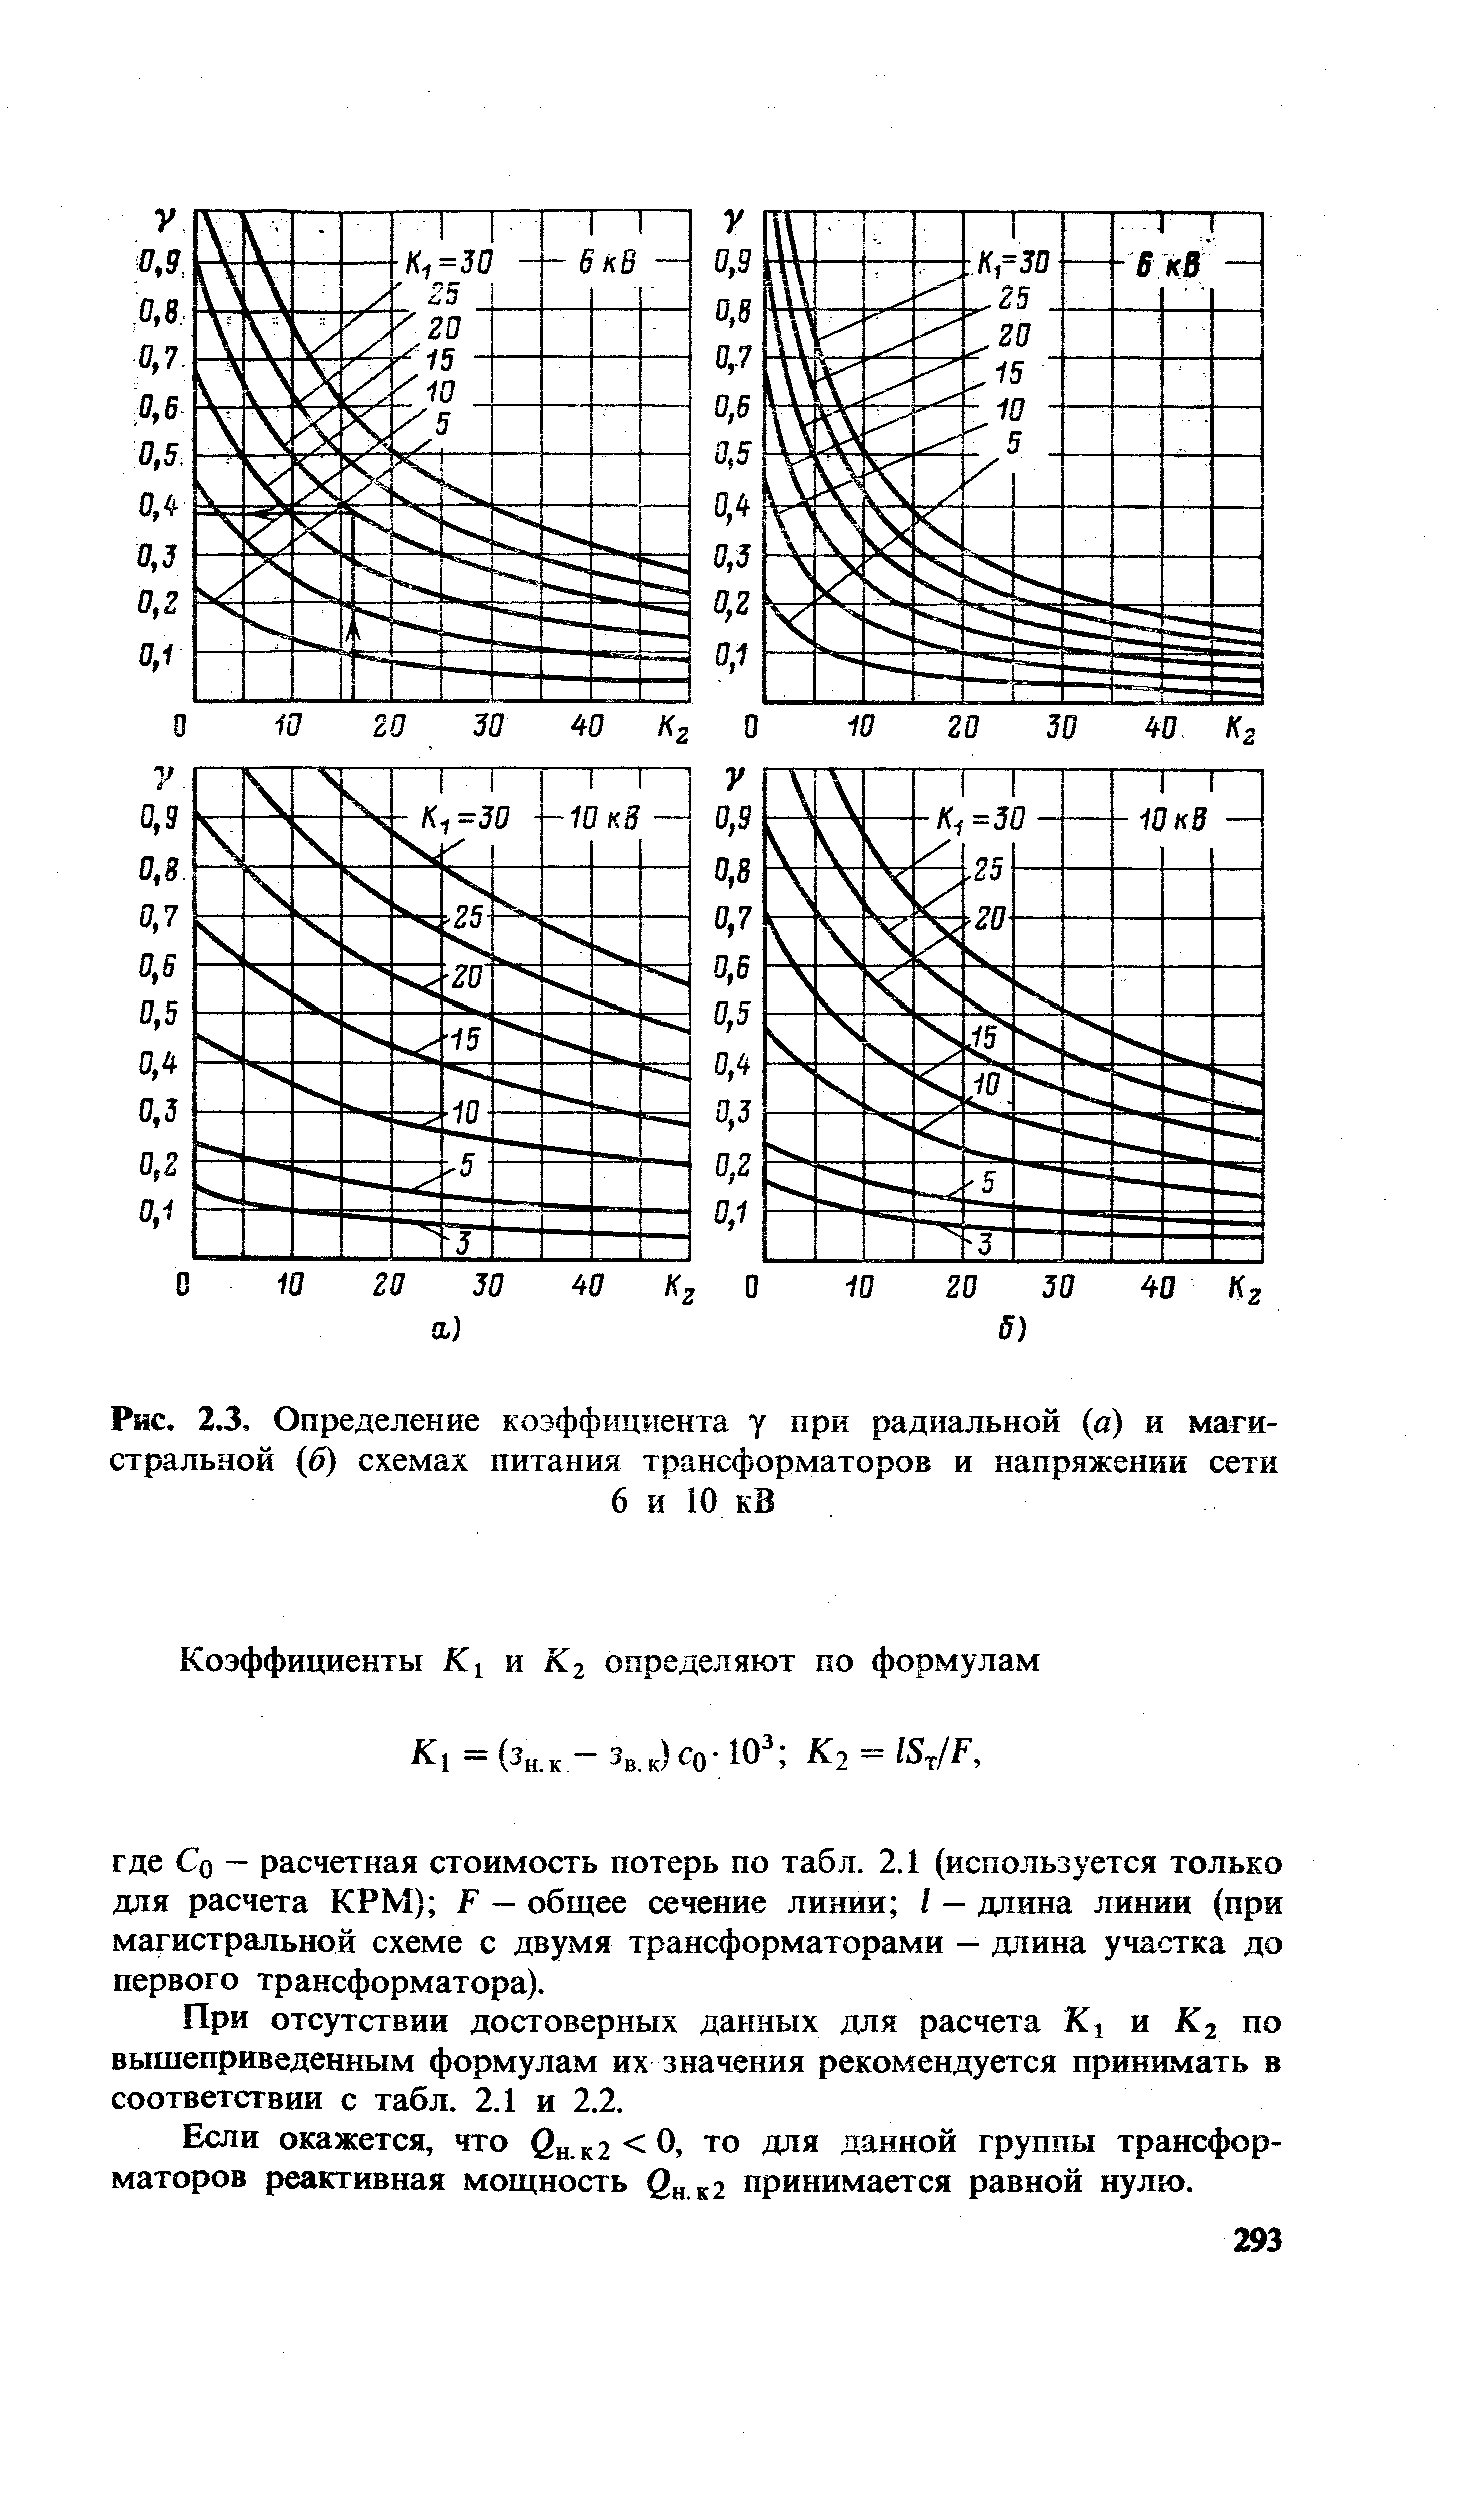 Рис. 2.3, Определение коэффициента у при радиальной (в) и магистральной (б) схемах питания трансформаторов и напряжении сети
